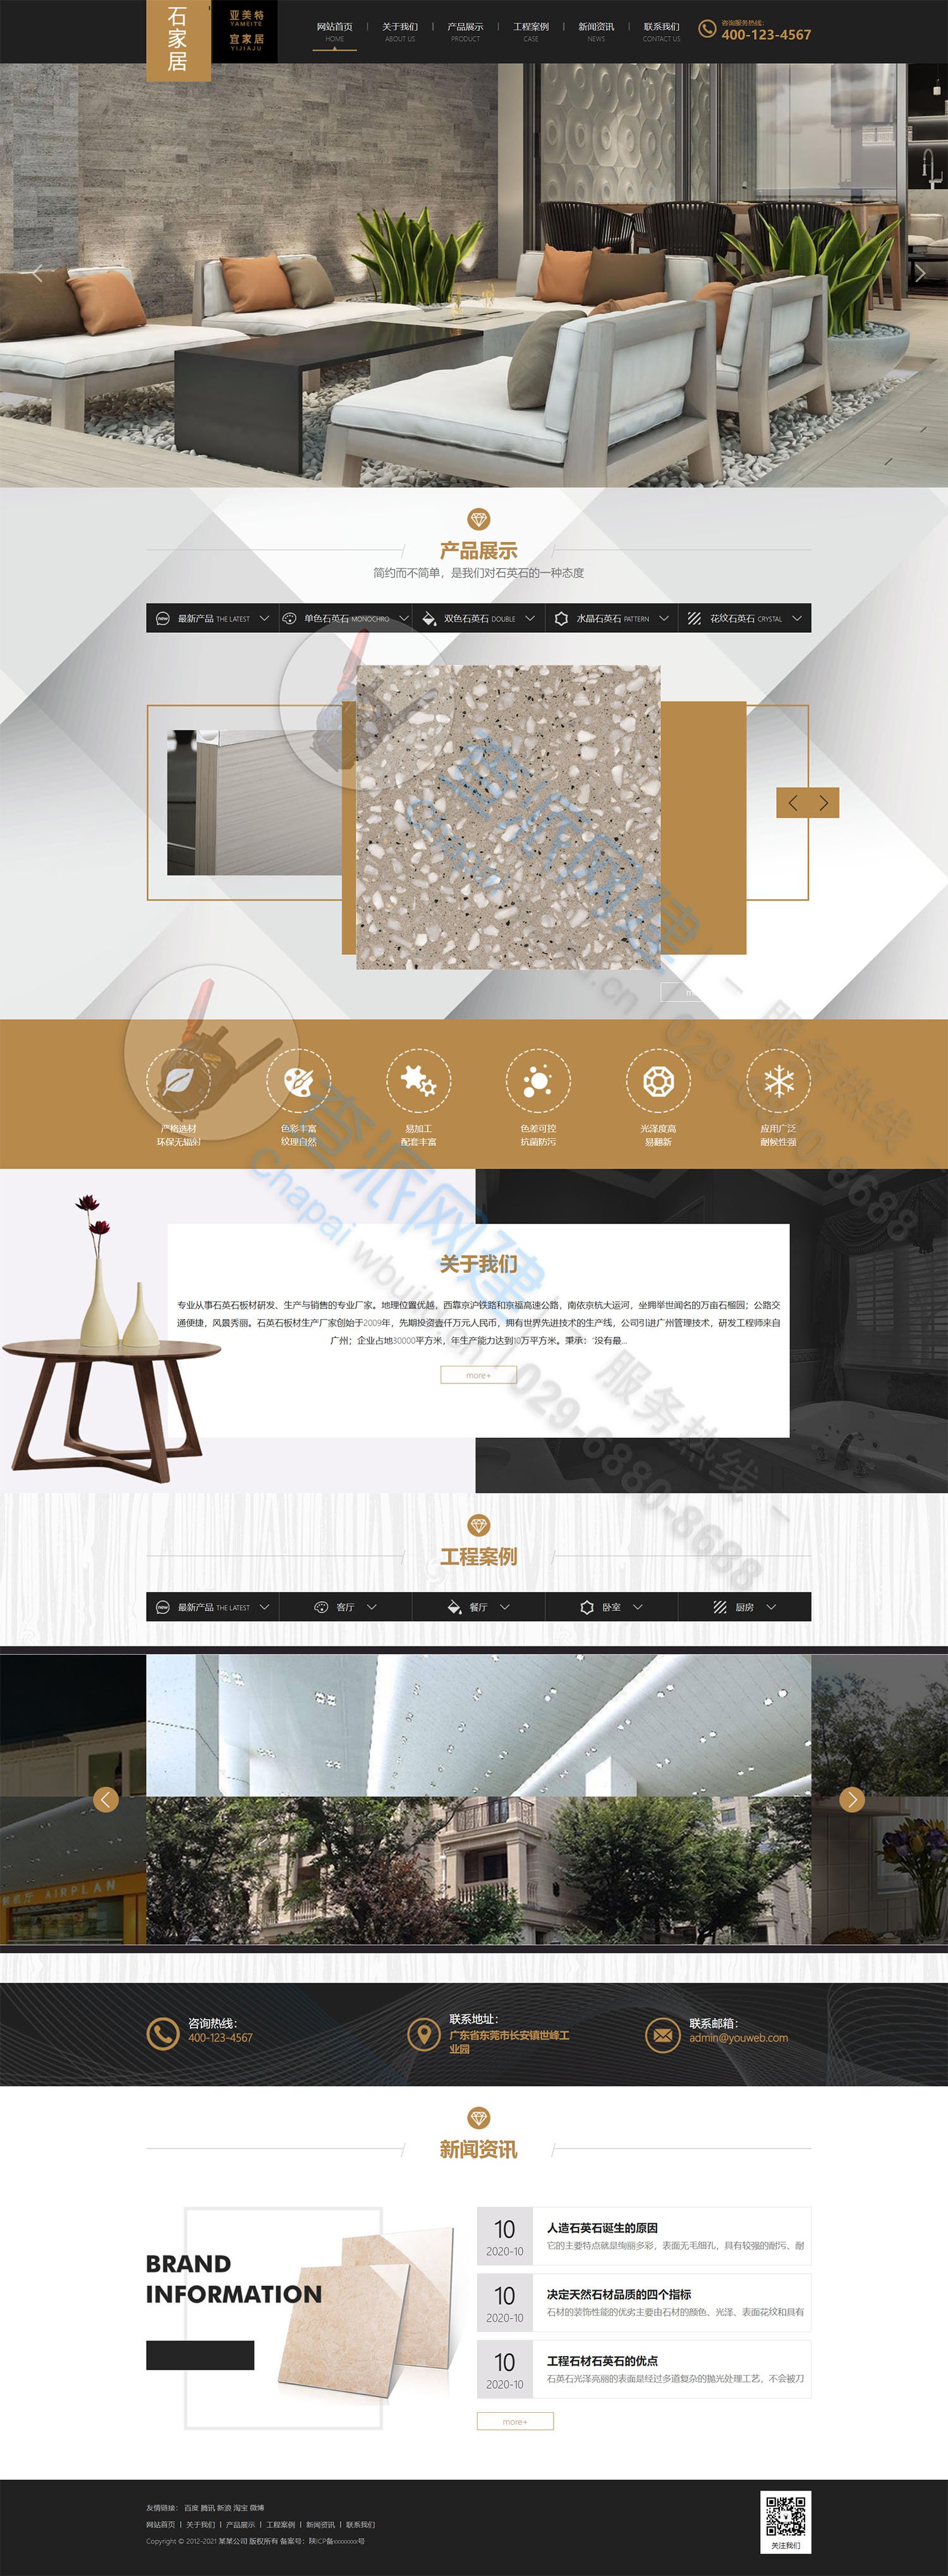 大理石瓷砖装修材料类厂家企业网站模板(自适应手机端)